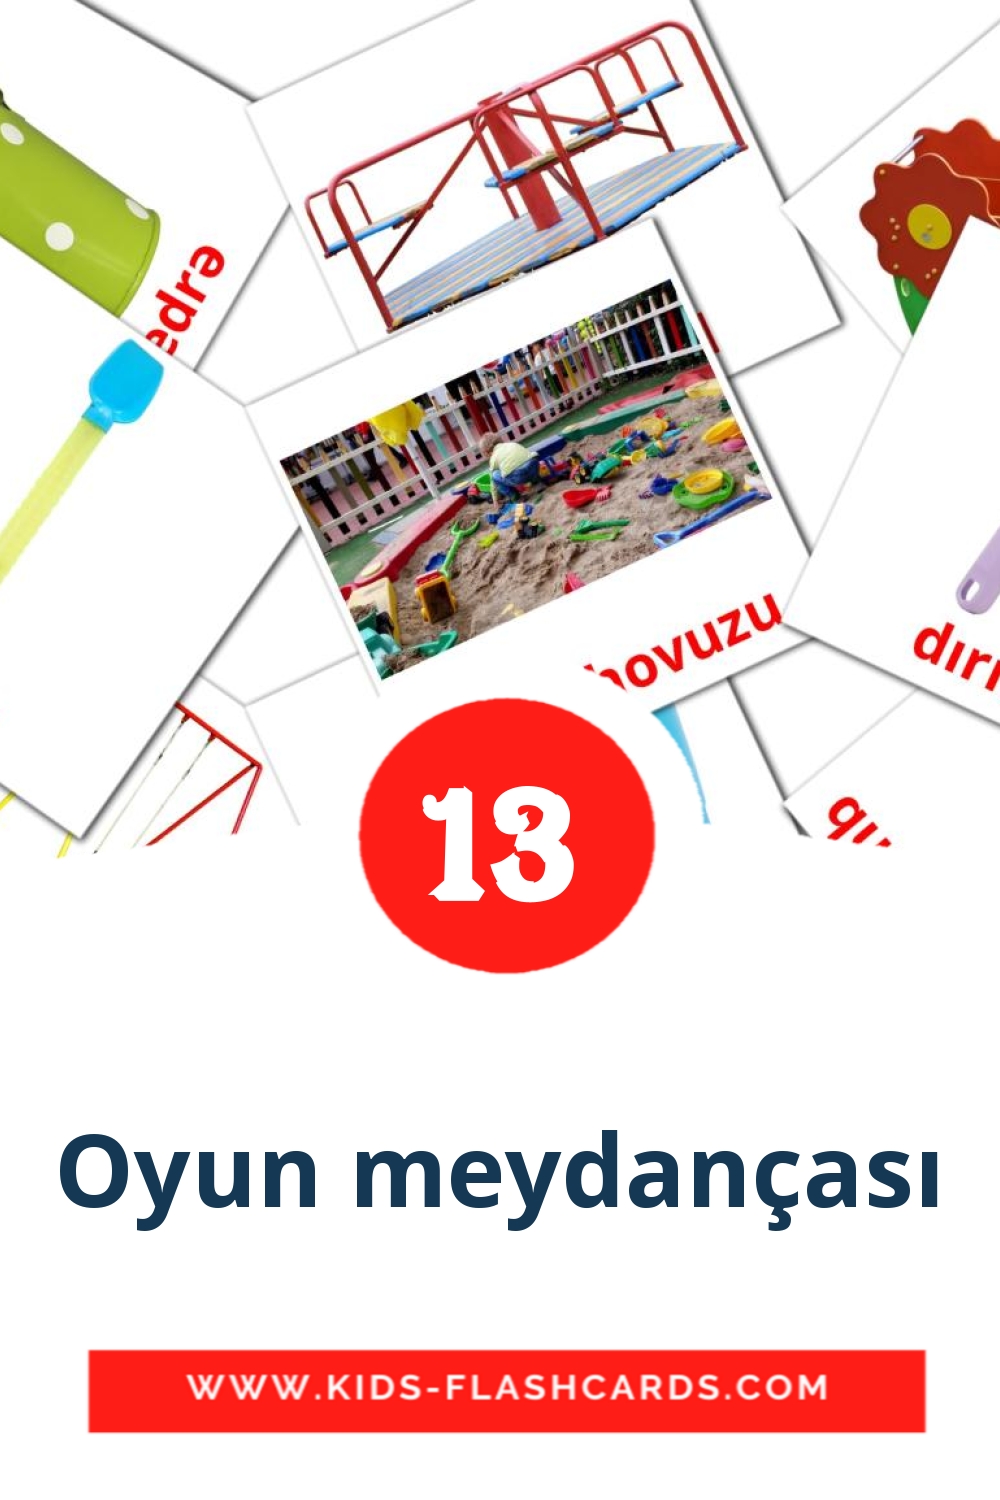 13 Oyun meydançası Picture Cards for Kindergarden in azerbaijani